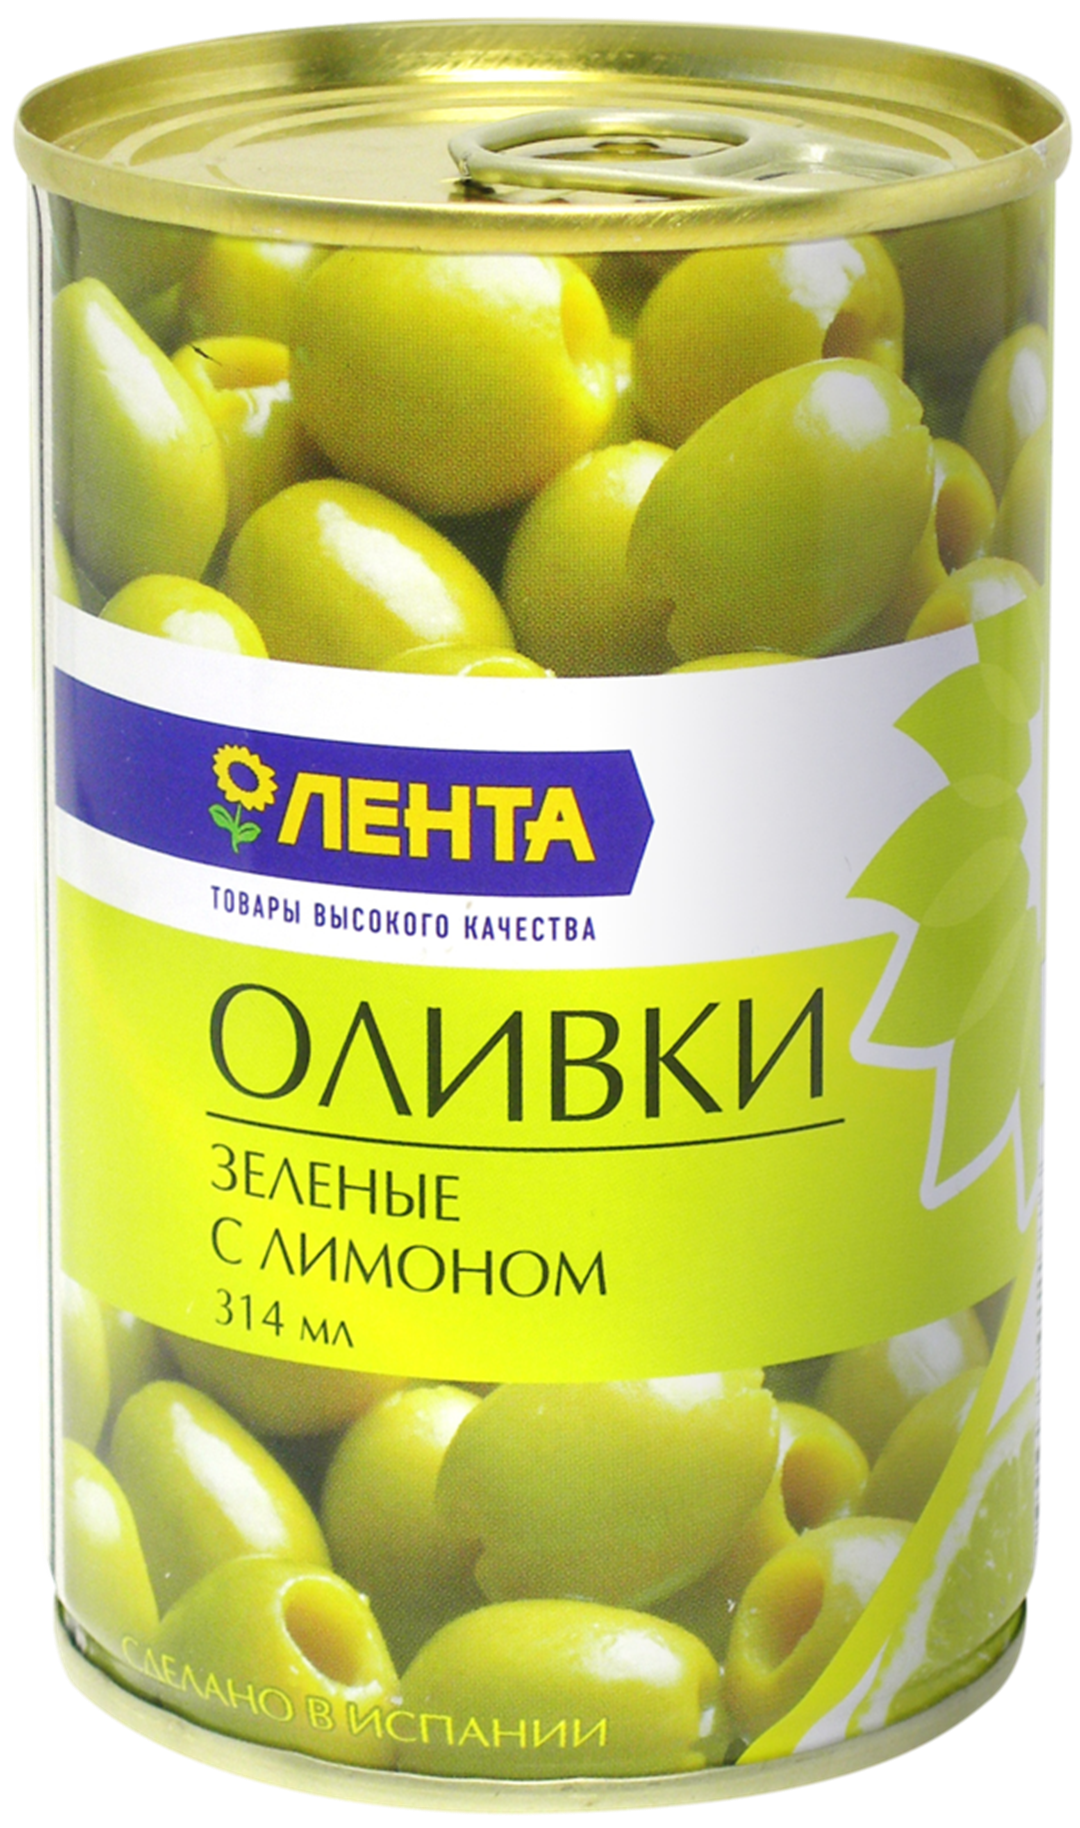 Оливки Лента фаршированные лимоном 314 мл